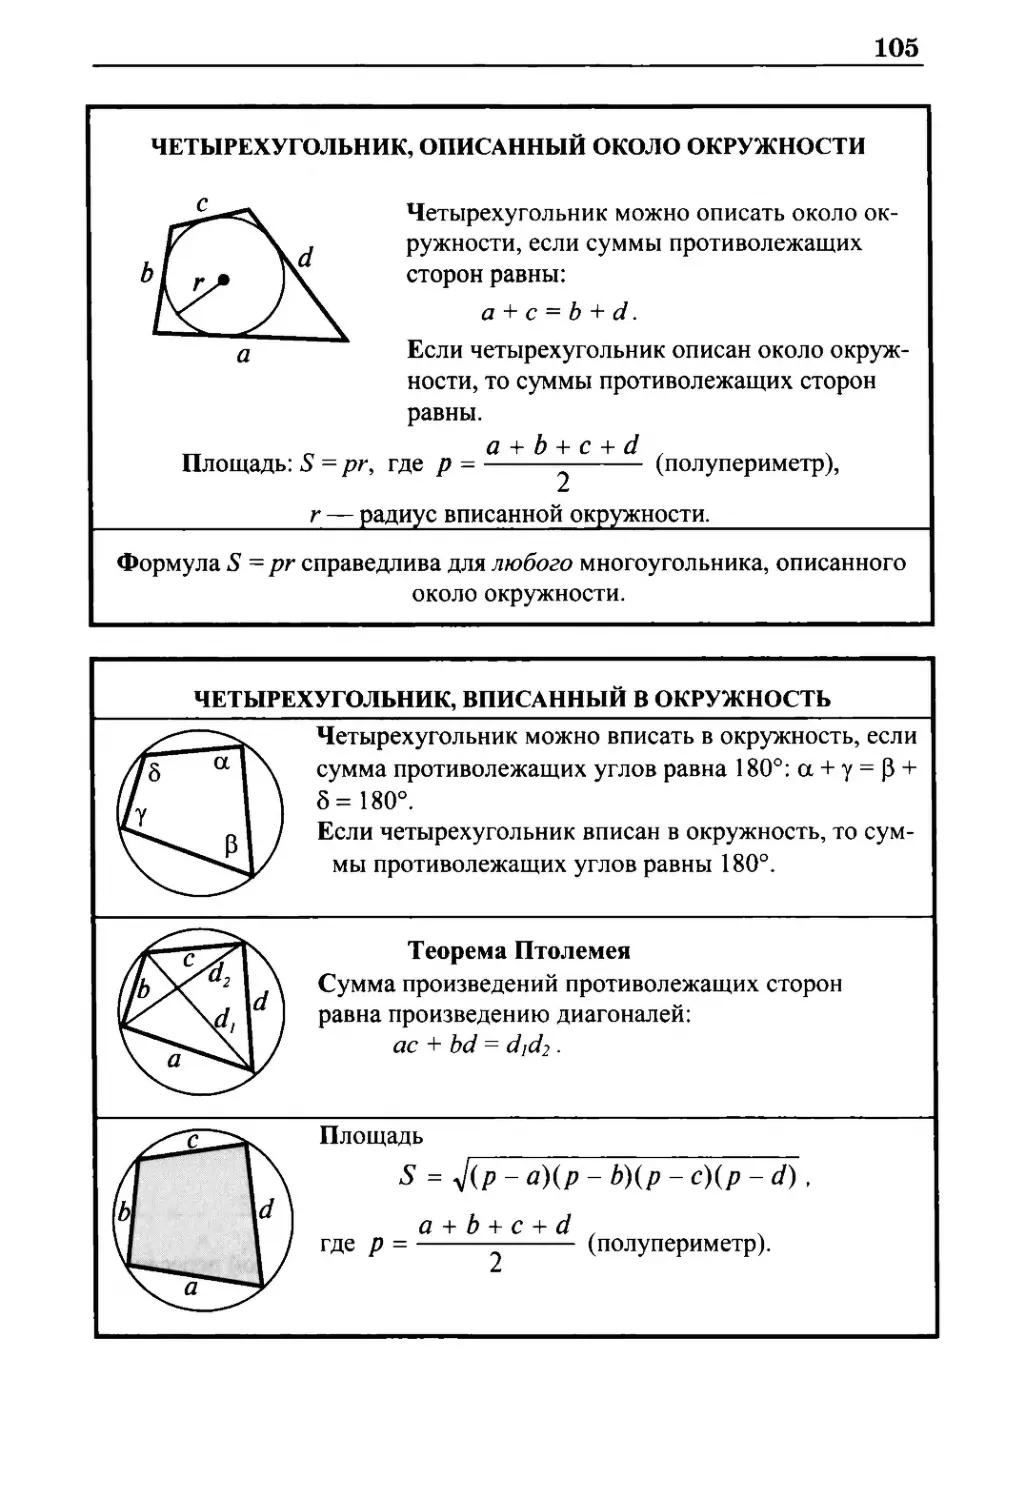 Четырехугольник, описанный около окружности
Четырехугольник, вписанный в окружность